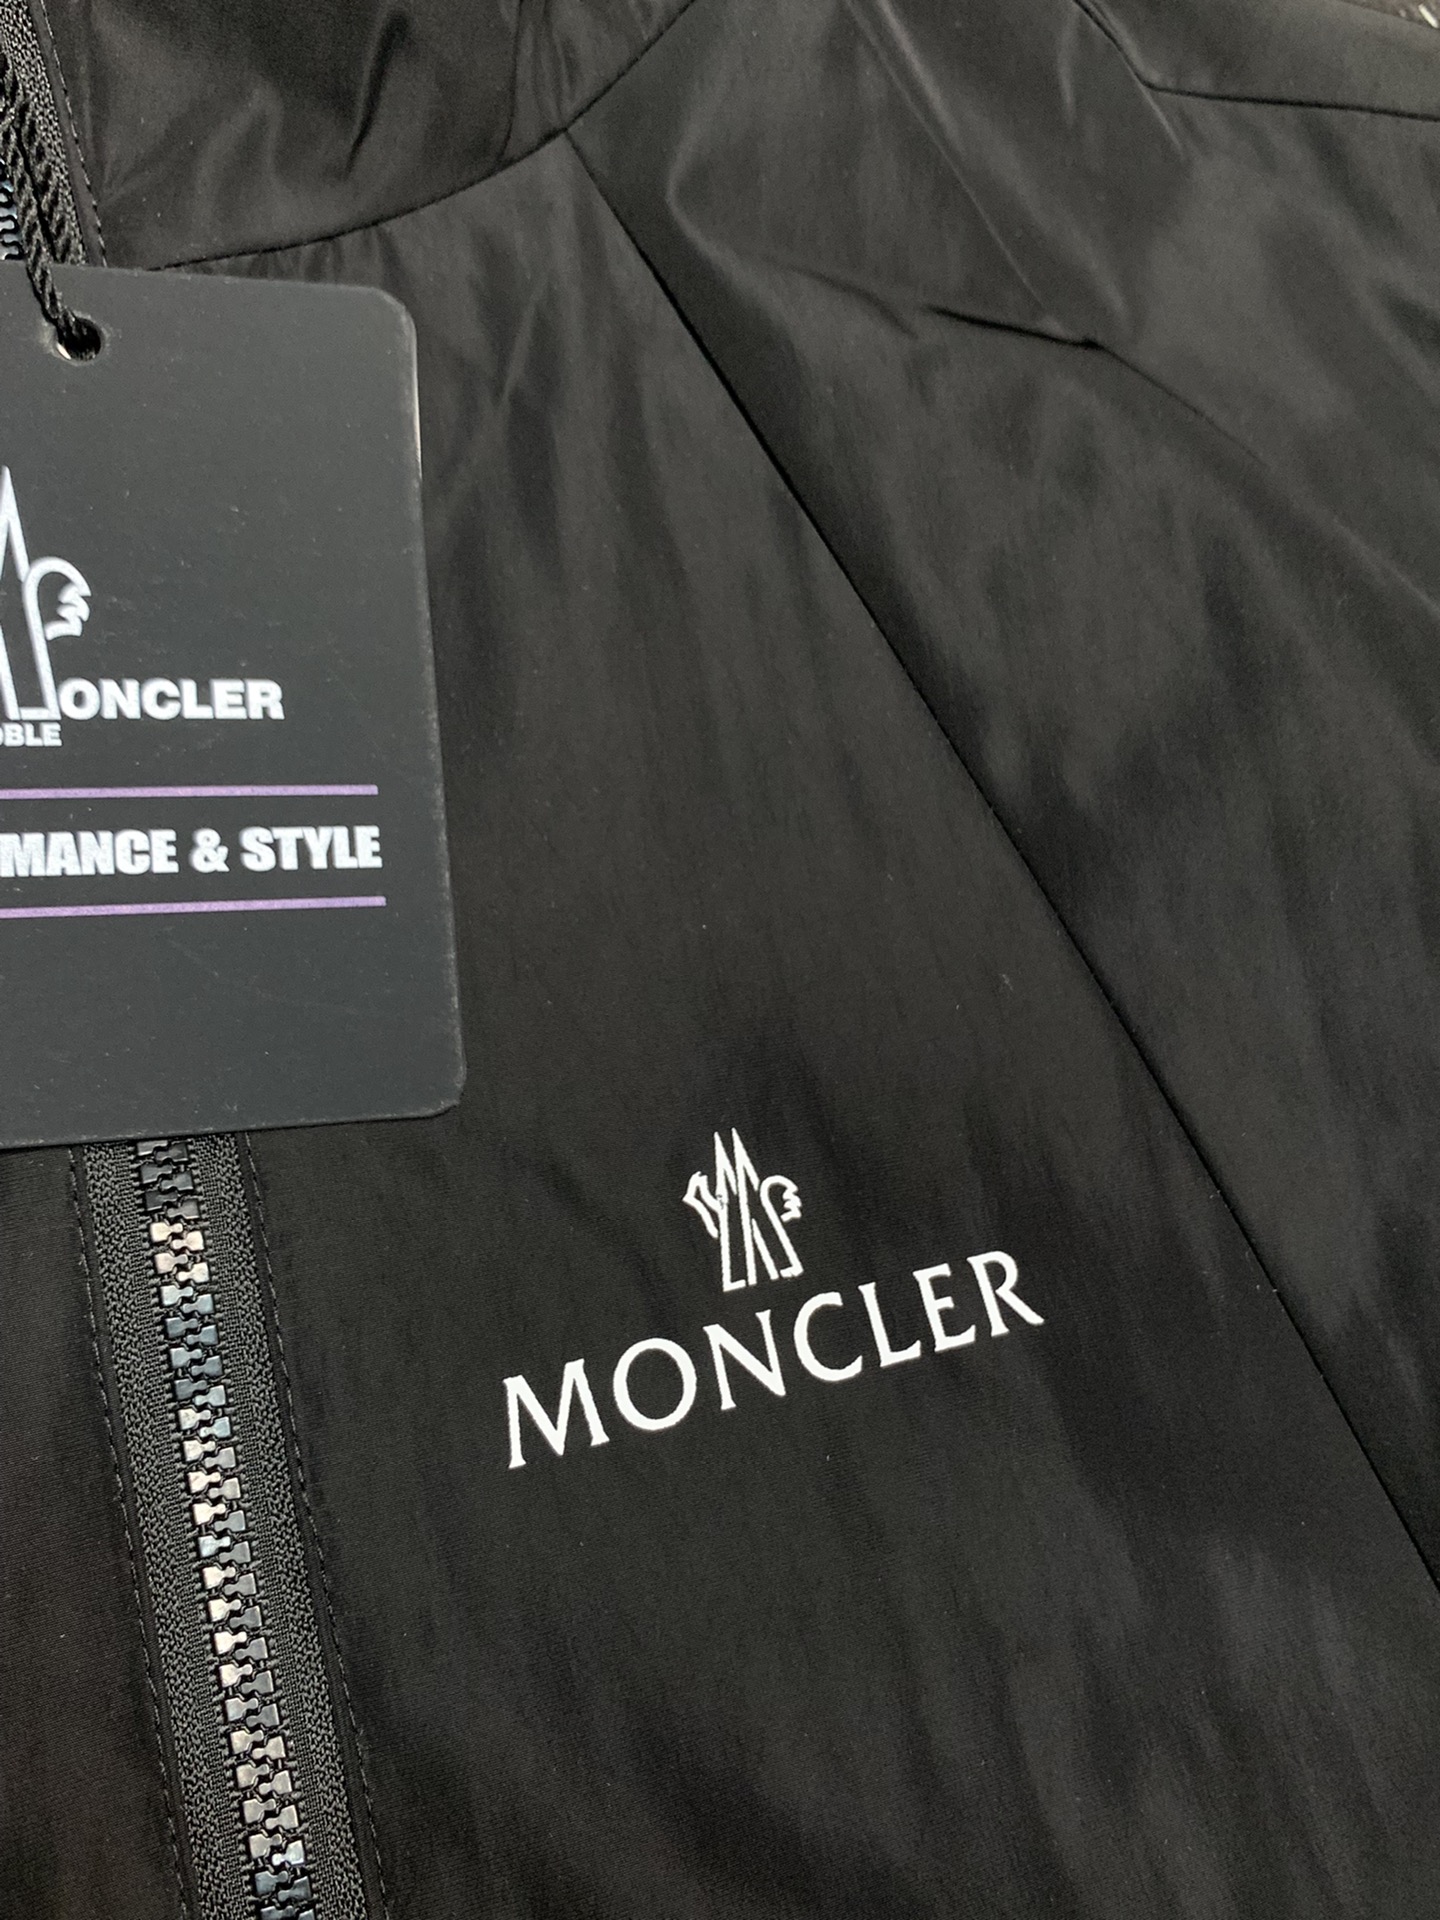 Moncler蒙口独家专供最新春秋时尚连帽夹克经典设计感与颜值爆棚的外套品质更是无法挑剔品控可以直接入手